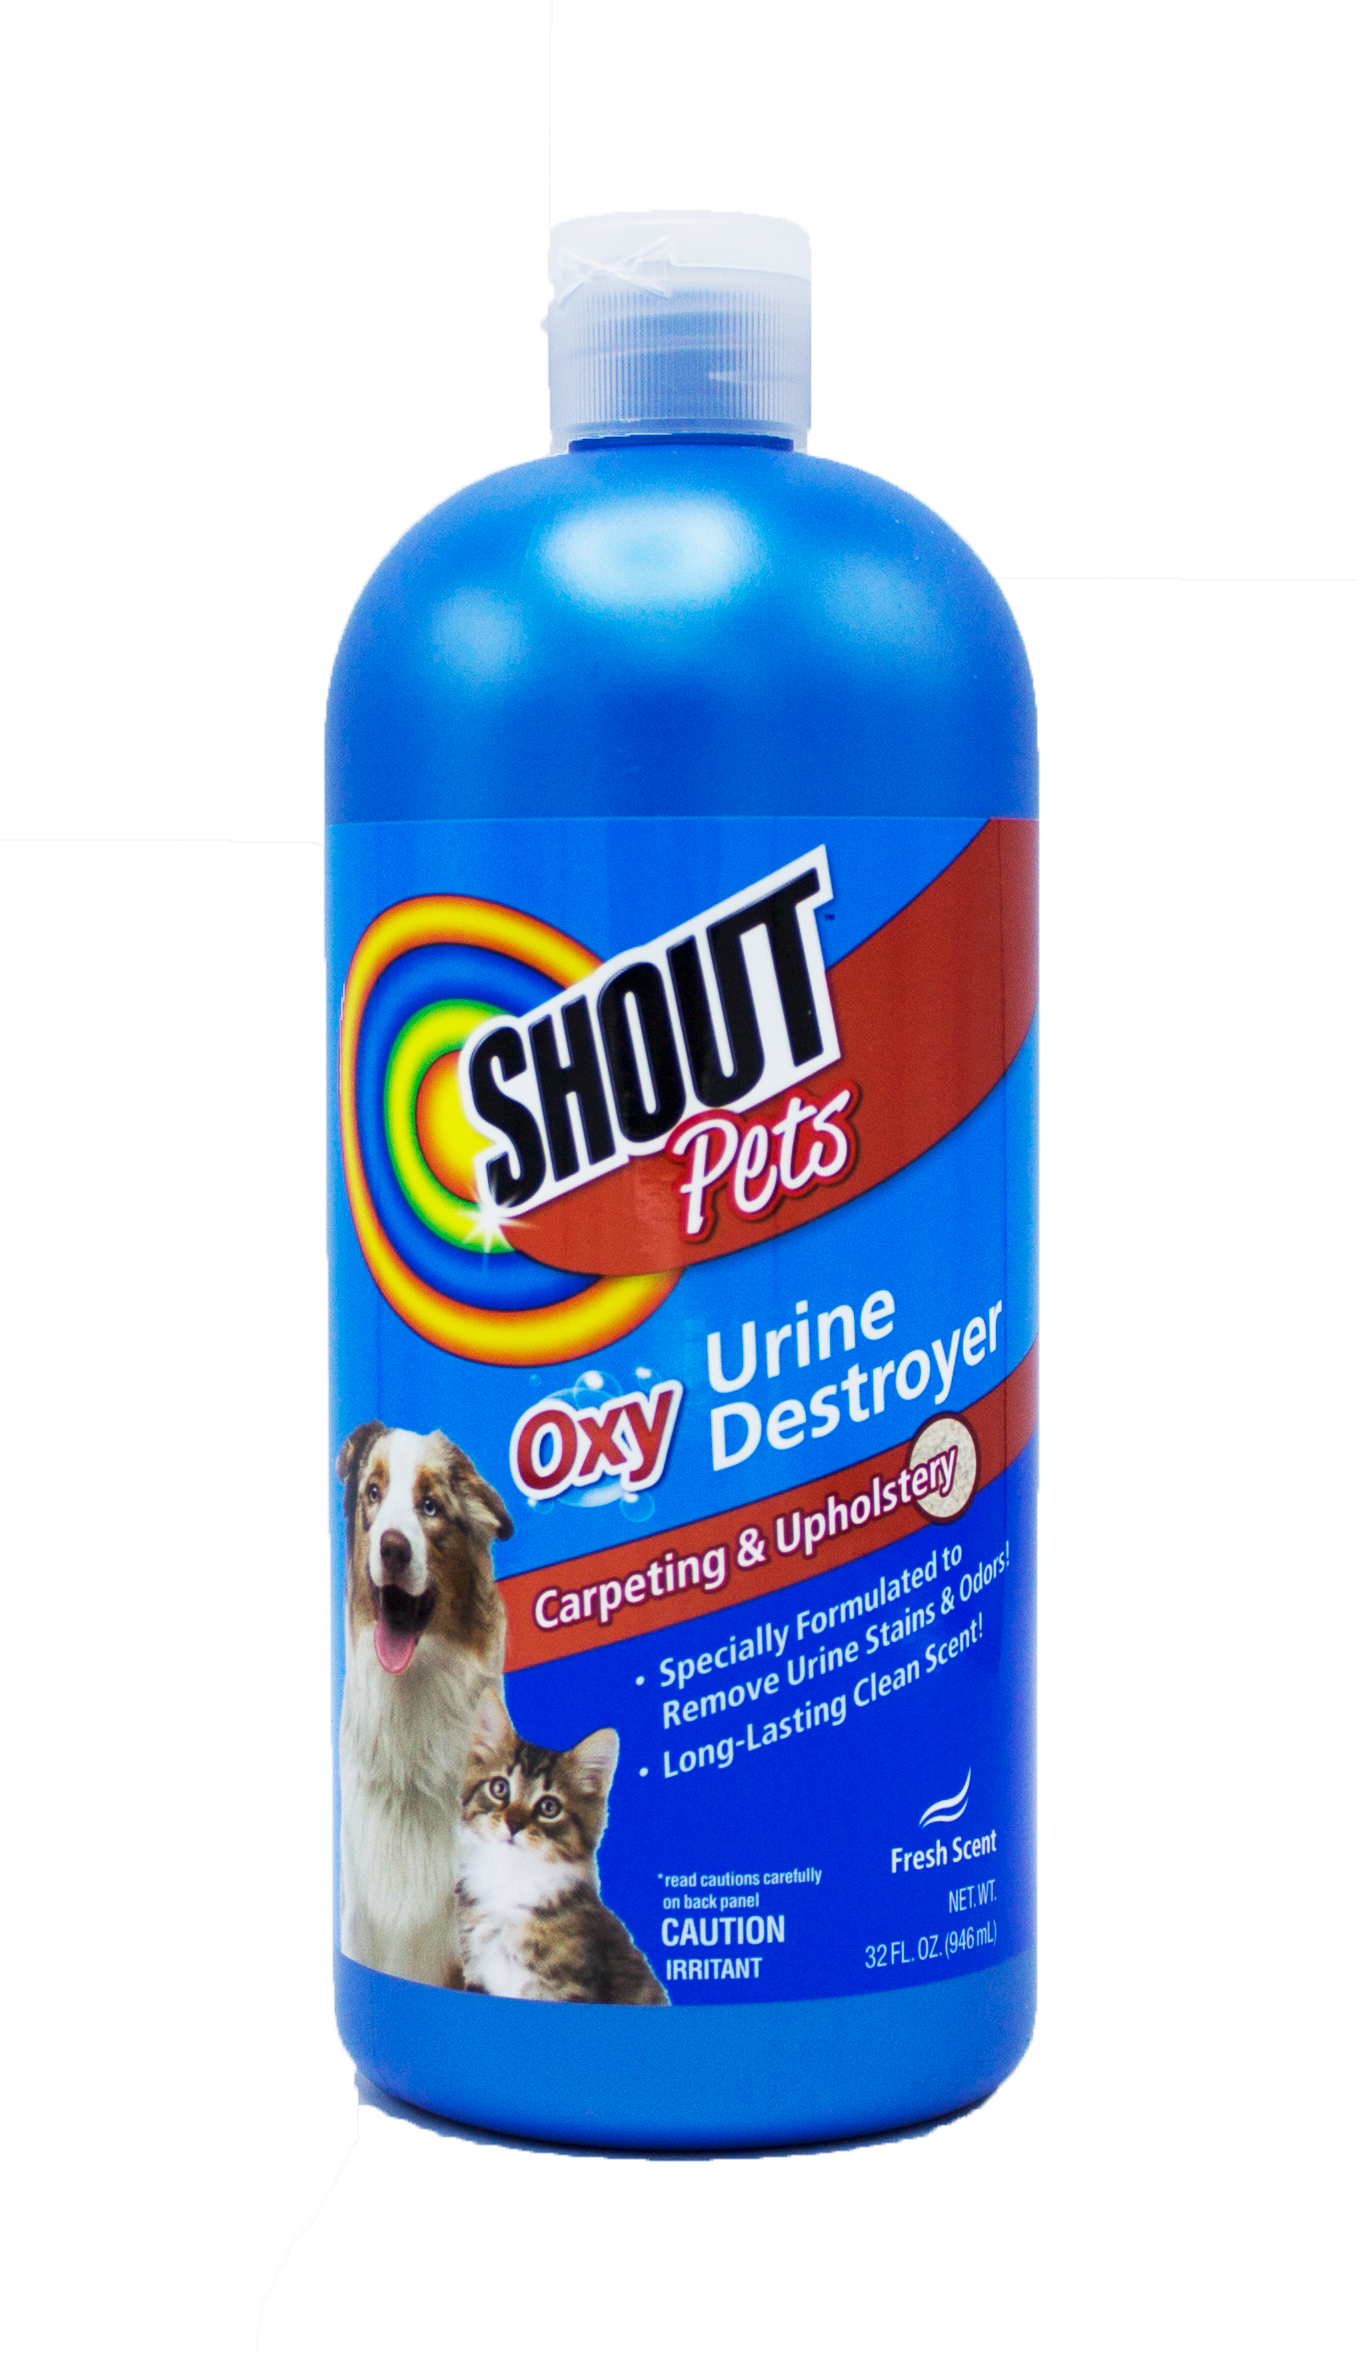 Shout for Pets Pro Carpet Foam, 22 oz.